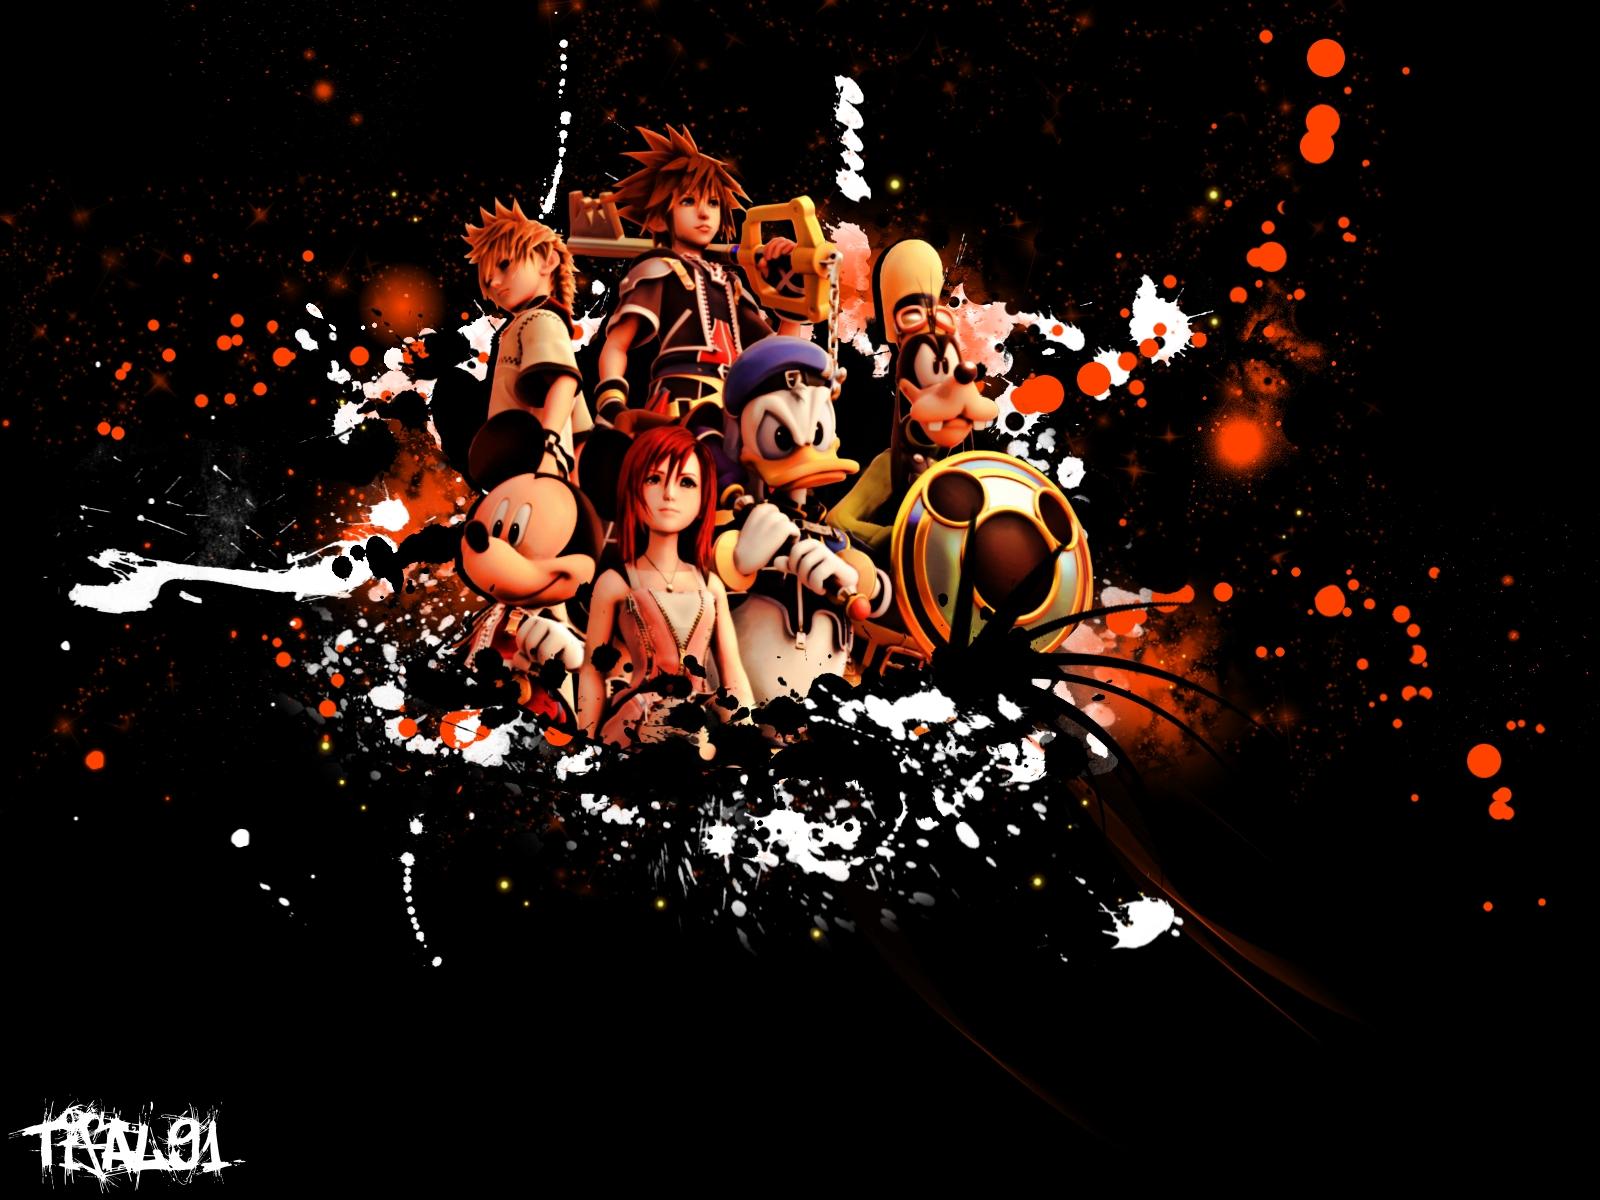 1600 x 1200 · jpeg - [50+] Kingdom Hearts Live Wallpaper on WallpaperSafari